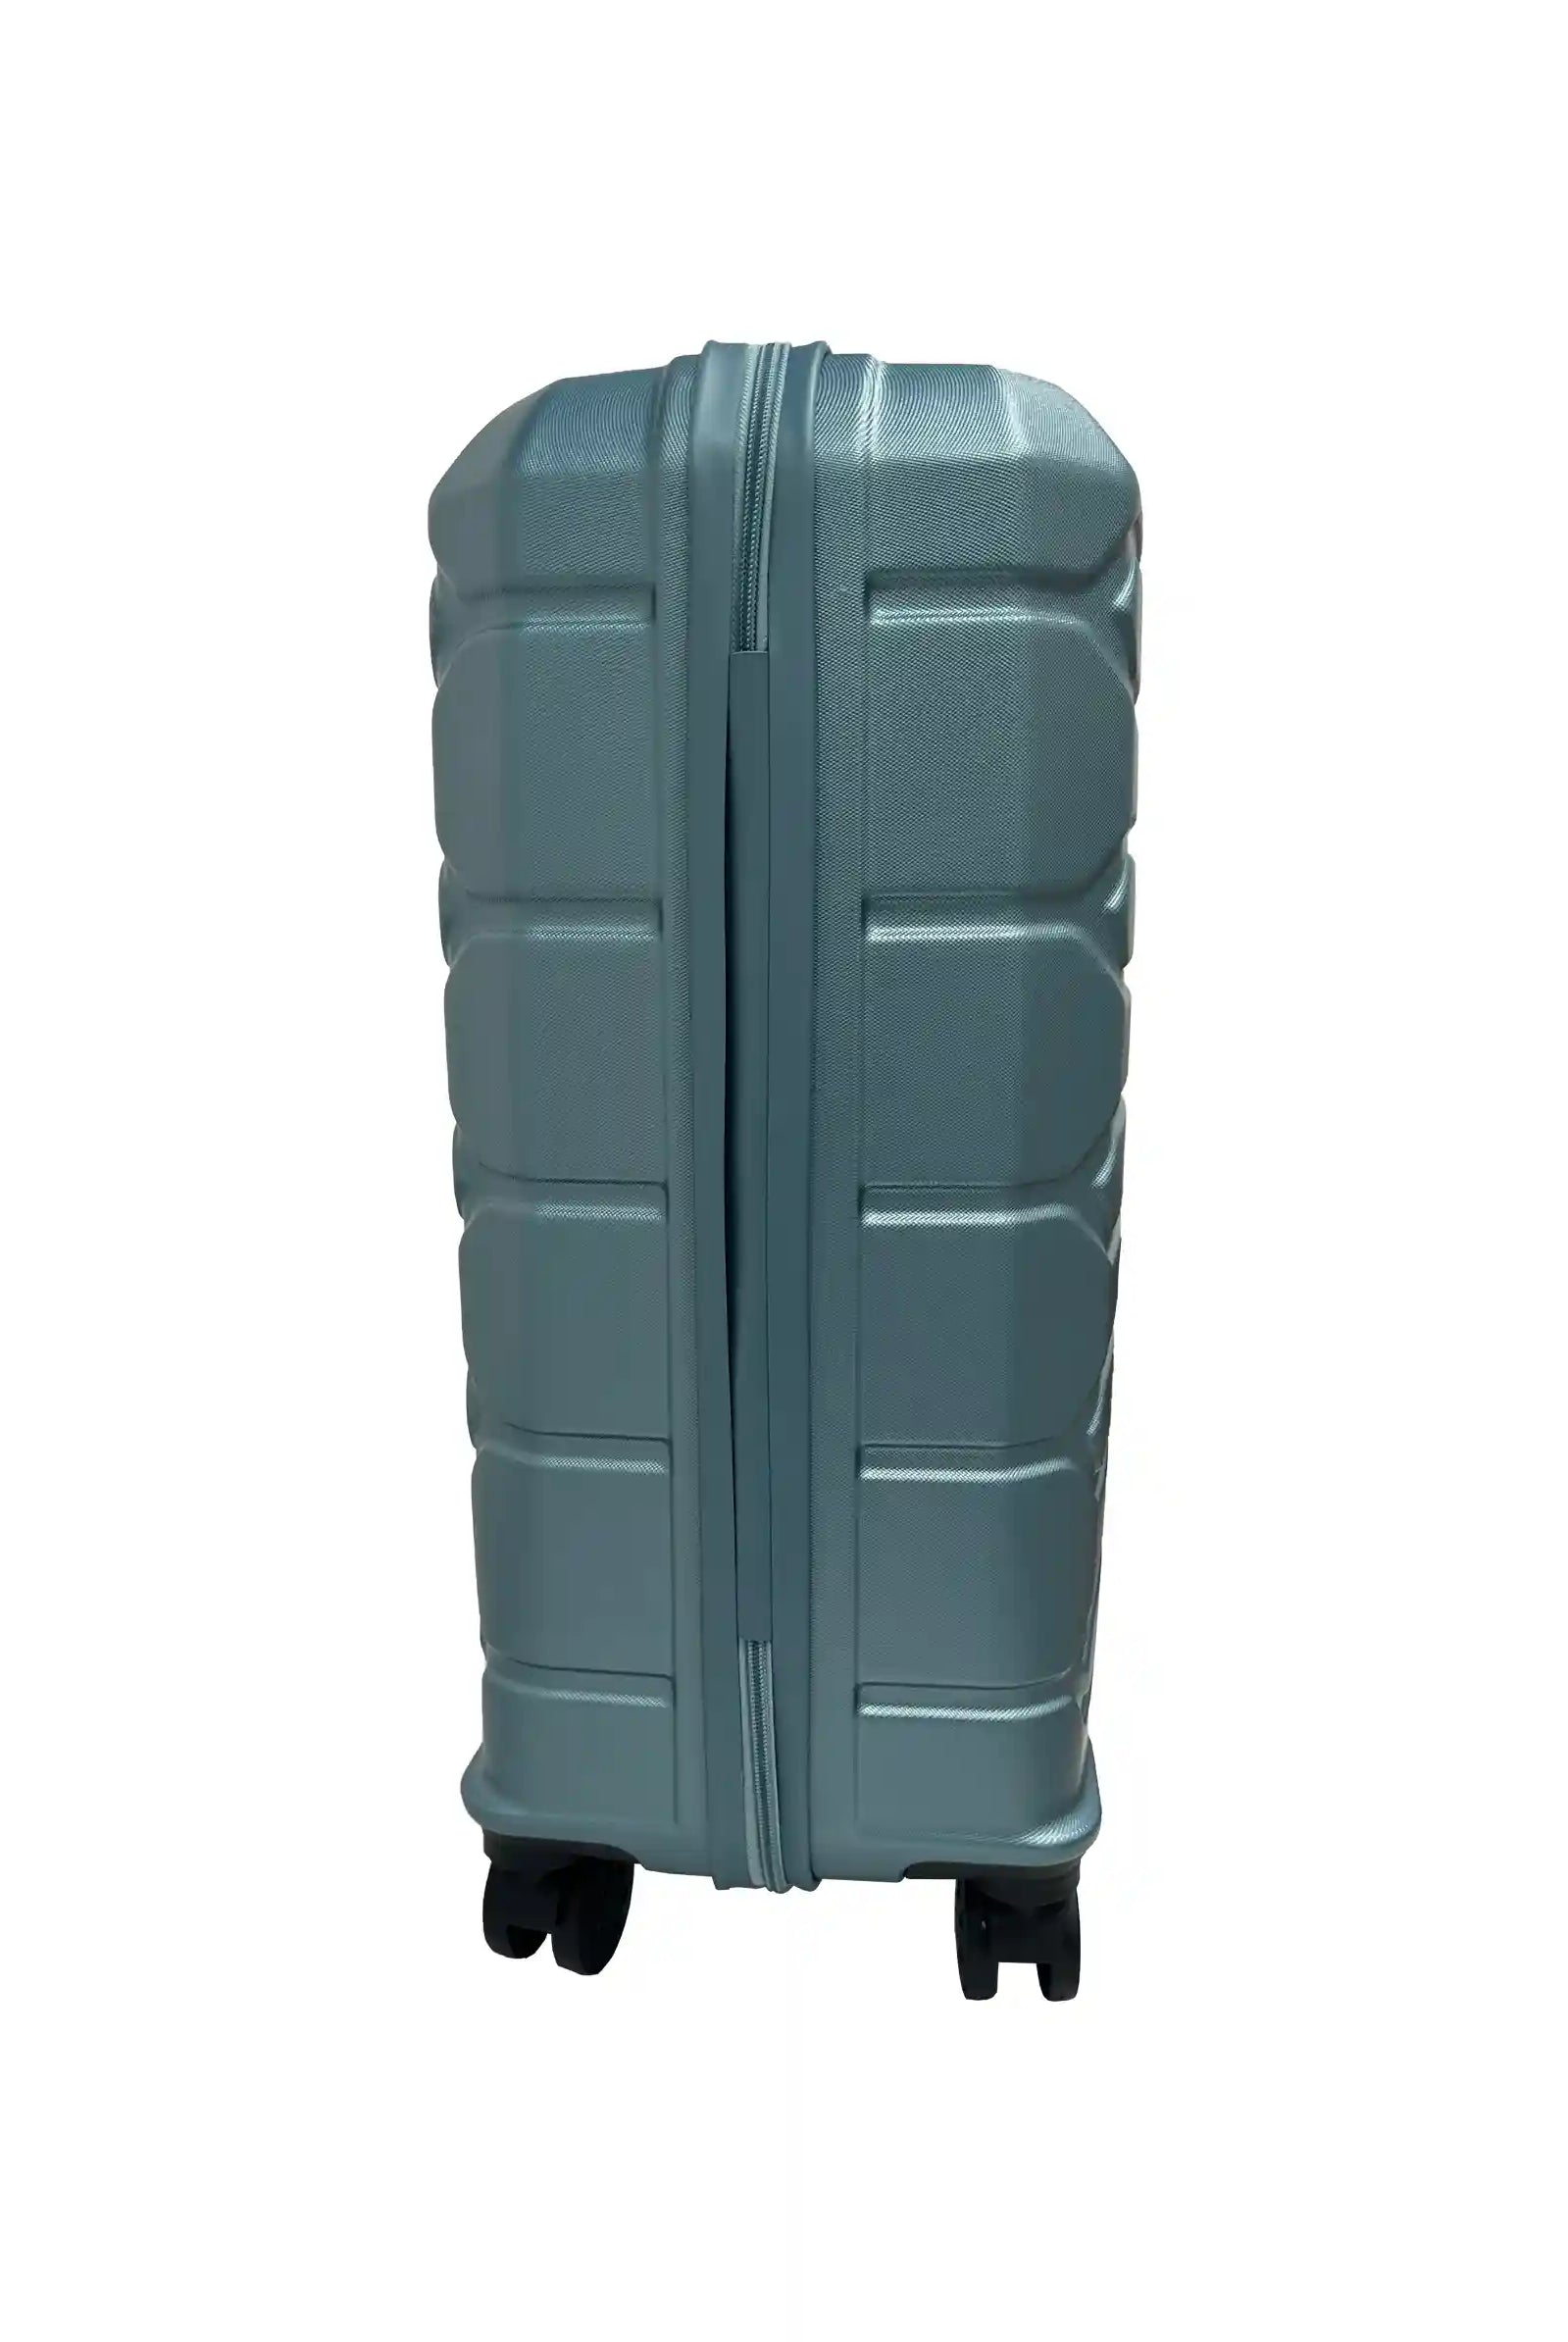 medium size hard shell suitcase